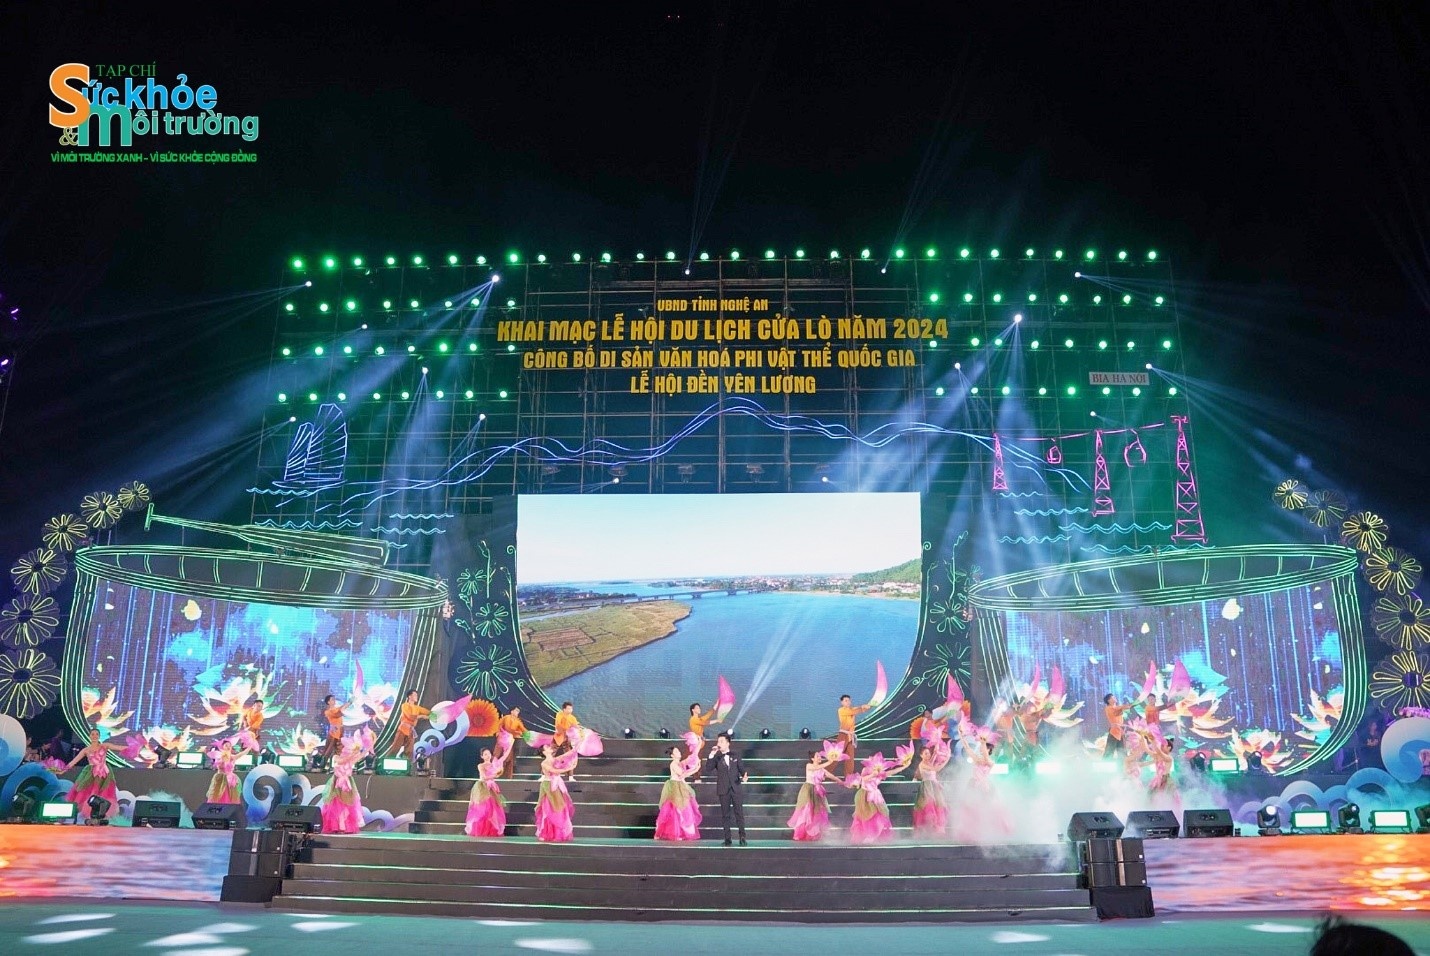 Nghệ An: Khai hội du lịch Cửa Lò năm 2024 và công bố di sản phi vật thể quốc gia Lễ hội đền Yên Lương